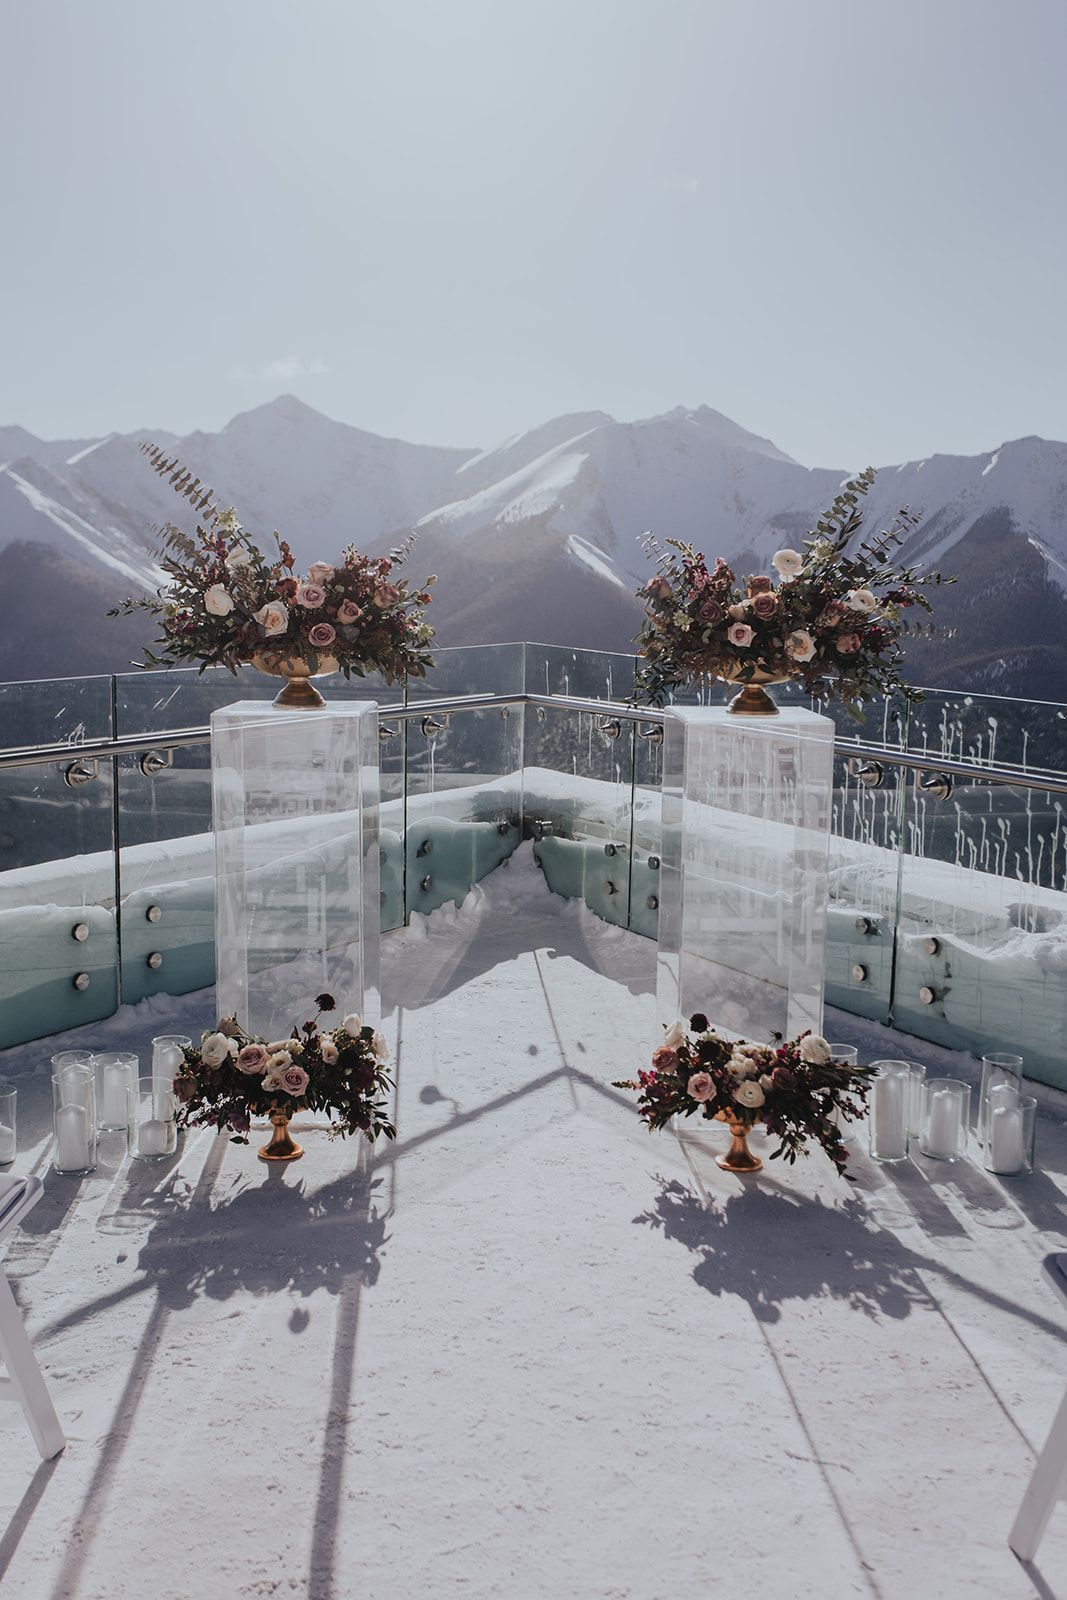 Sky Bistro Banff Wedding - Featured on Bronte Bride, winter wedding inspiration, floral ceremony installation